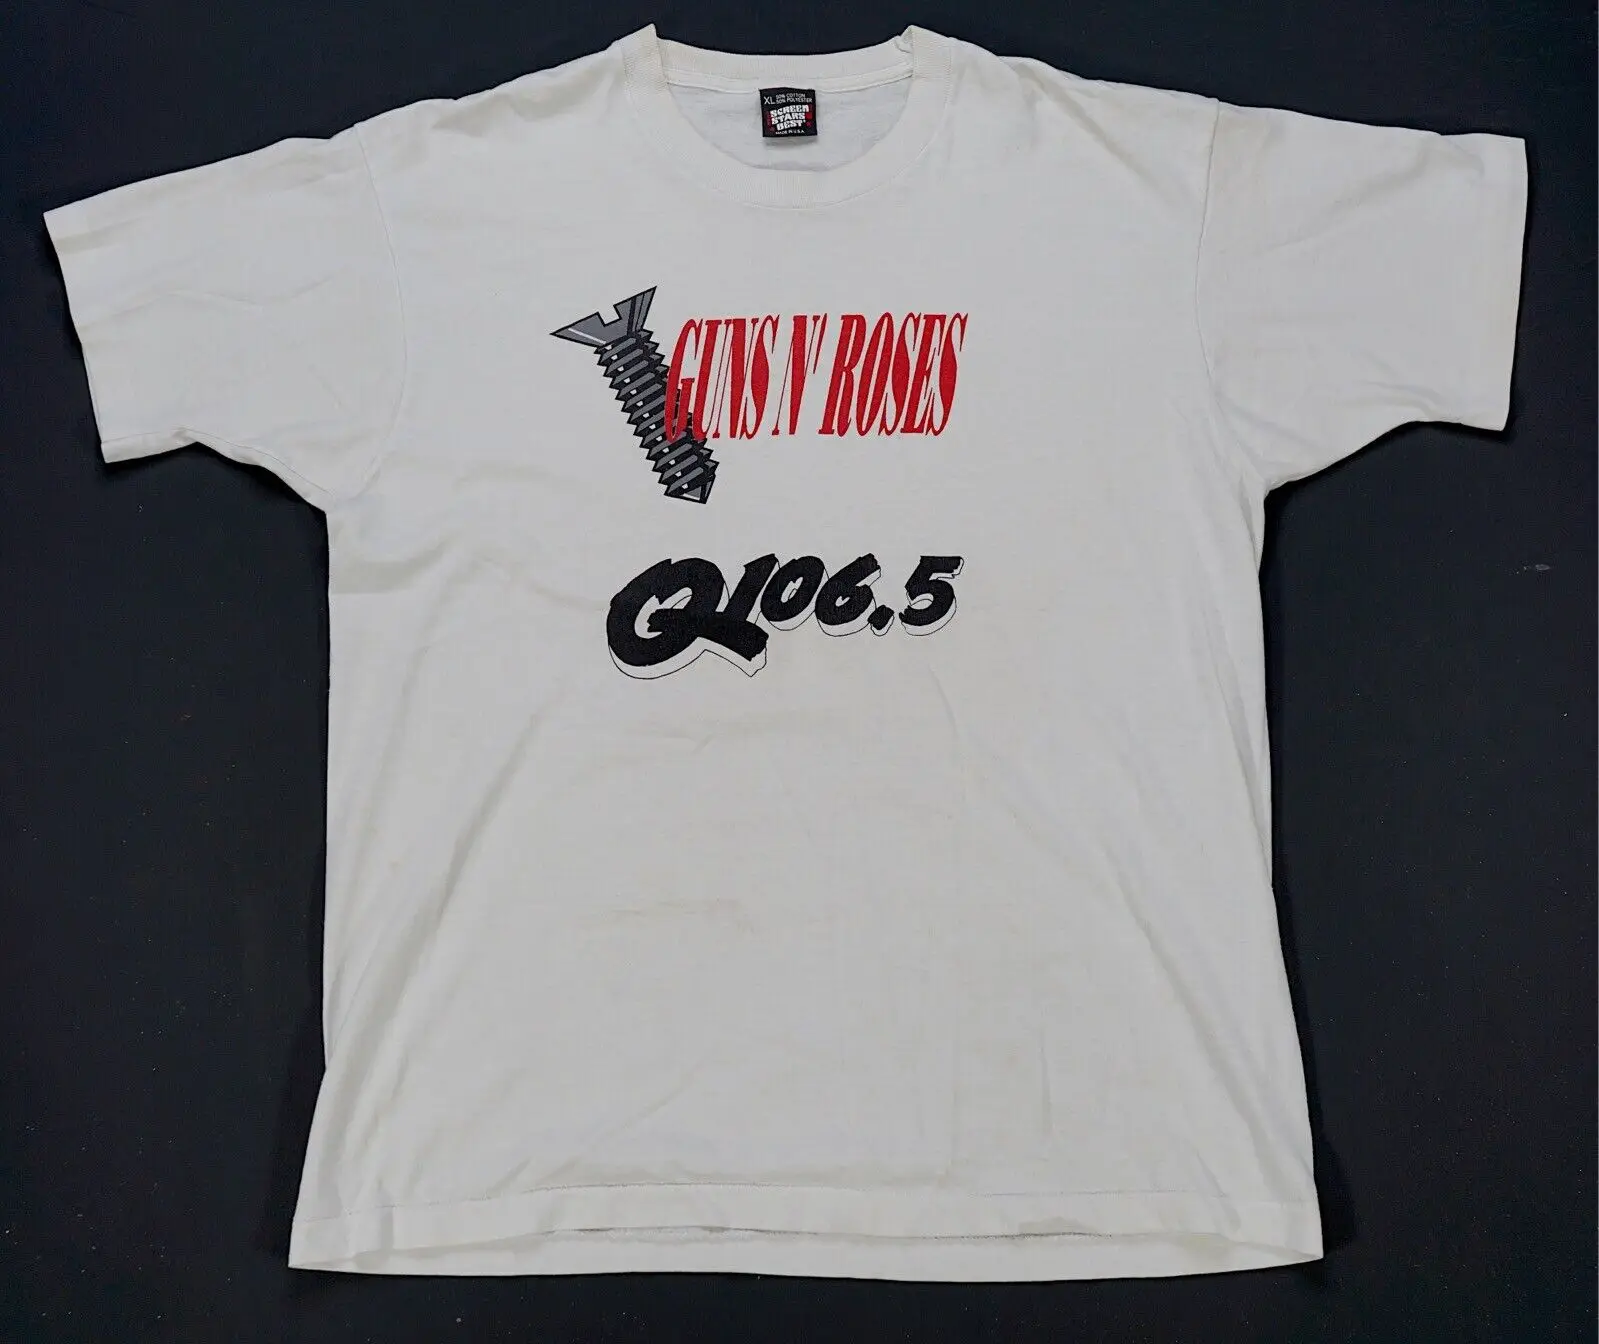 Редкая Футболка VTG SCREEN STARS Guns N’ Roses Q 106.5 Screw 90-х годов Рок-группы White XL